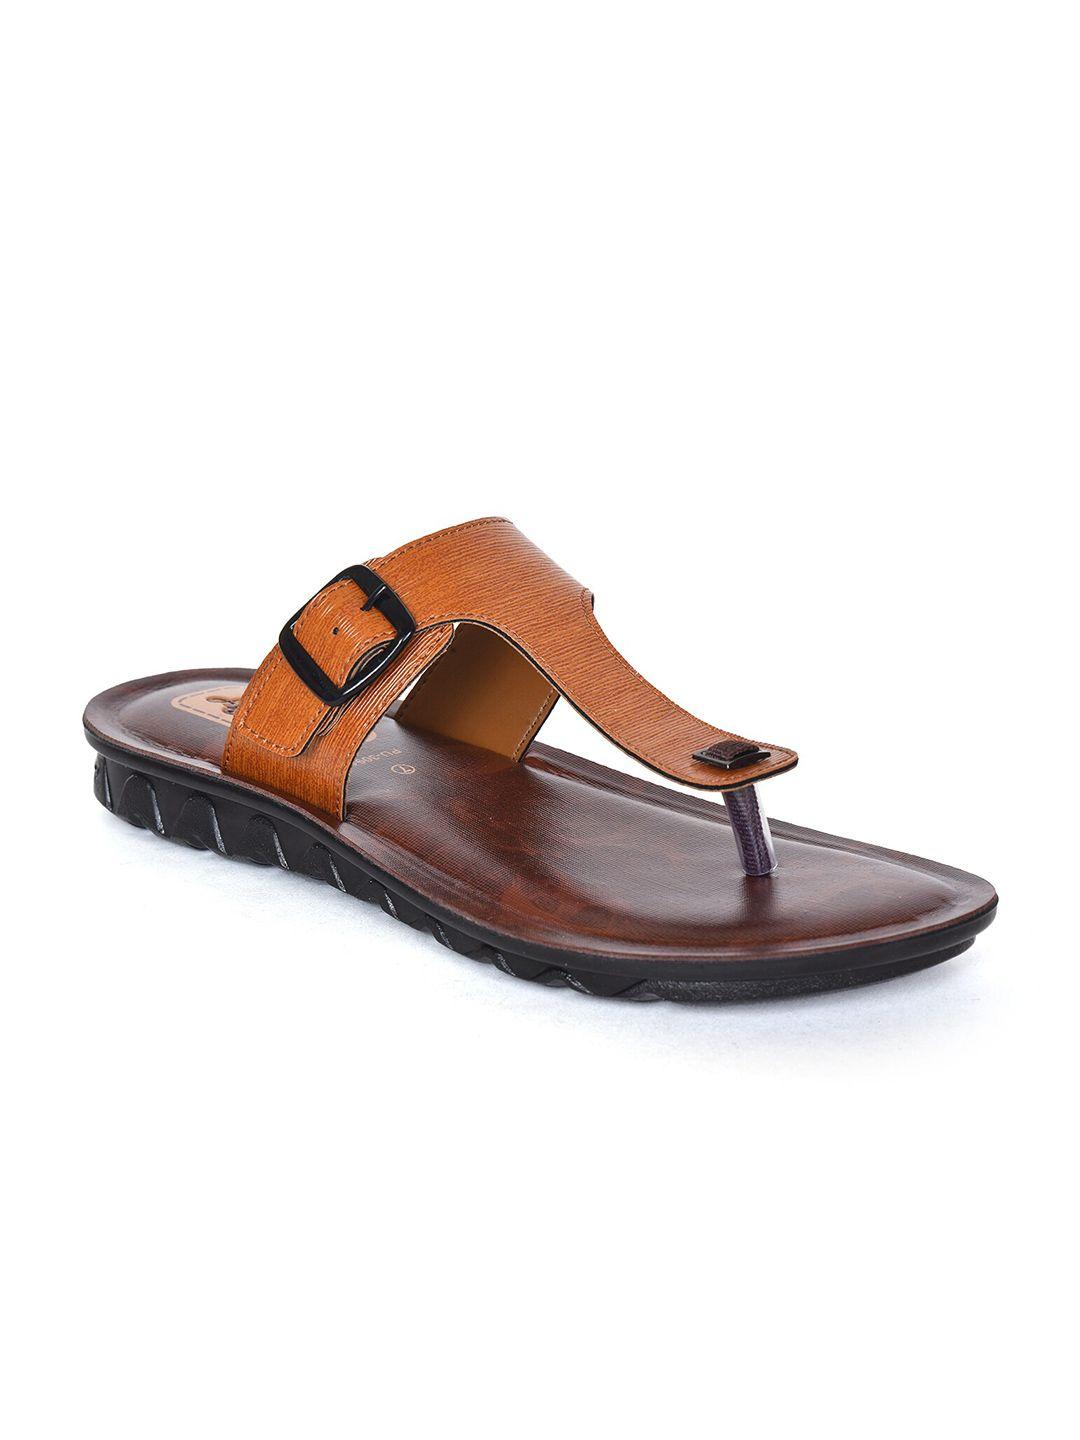 ajanta men open toe comfort sandals with buckle detail